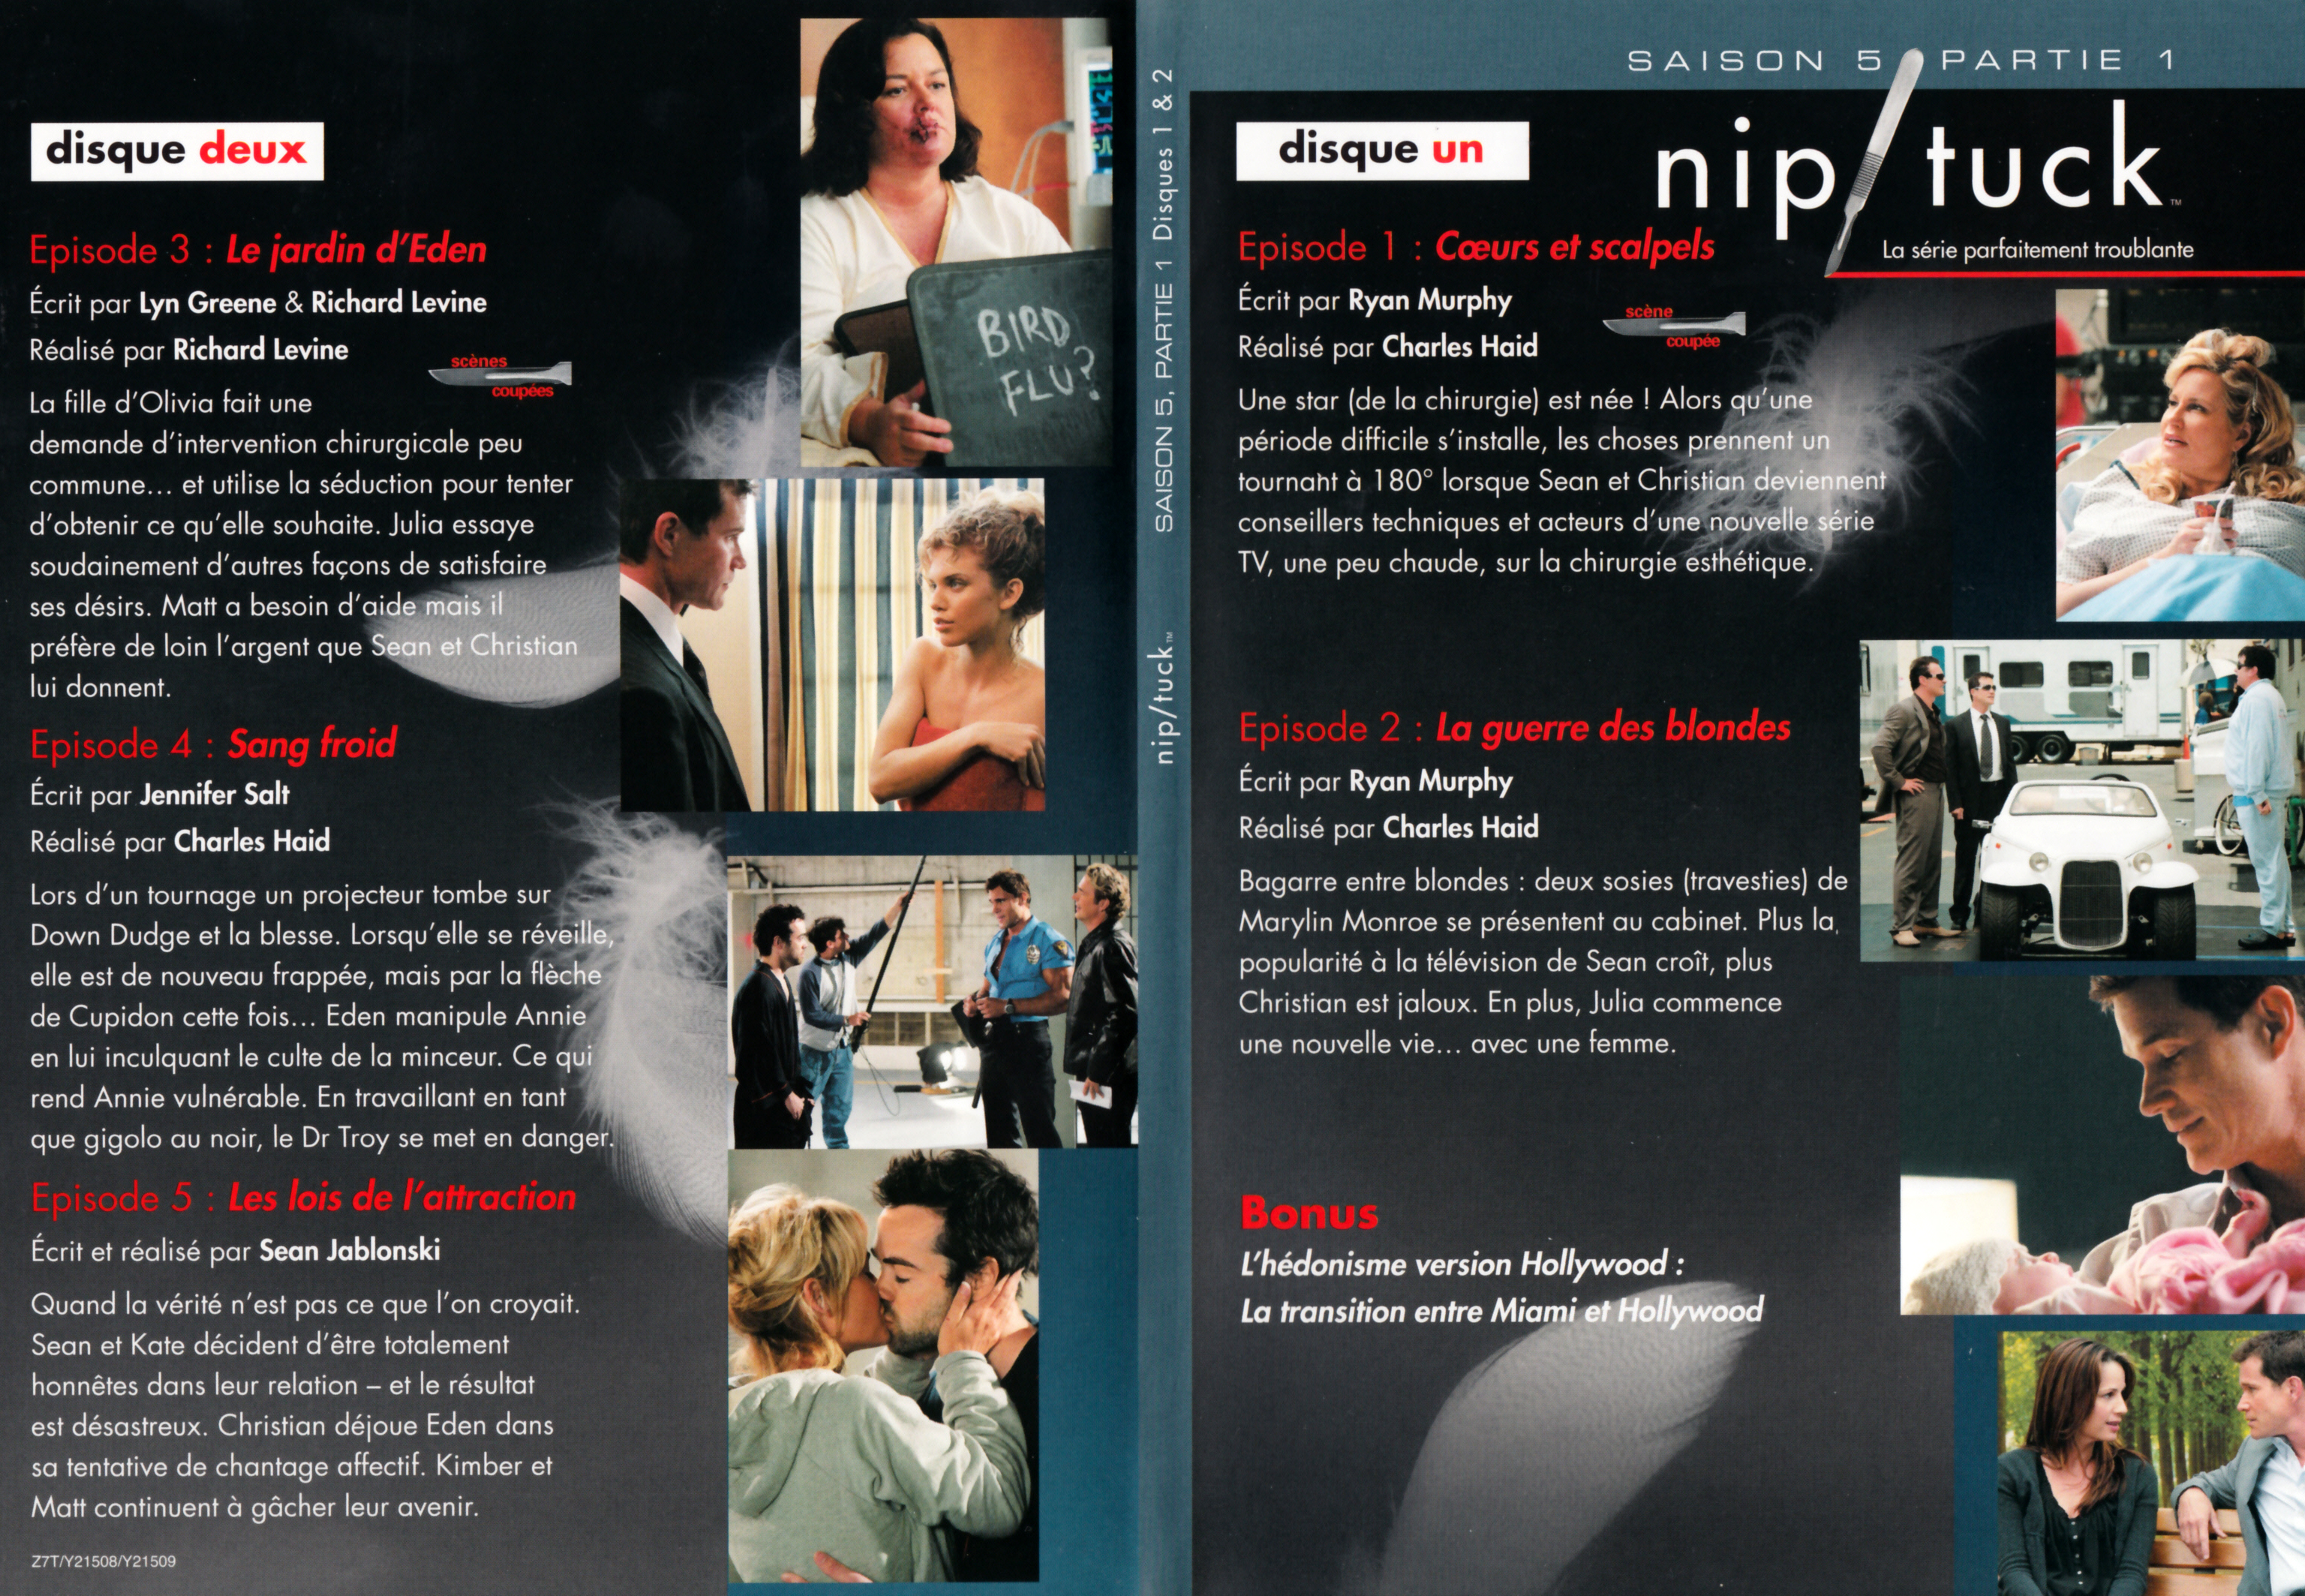 Jaquette DVD Nip-Tuck saison 5 Partie 1 DVD 1